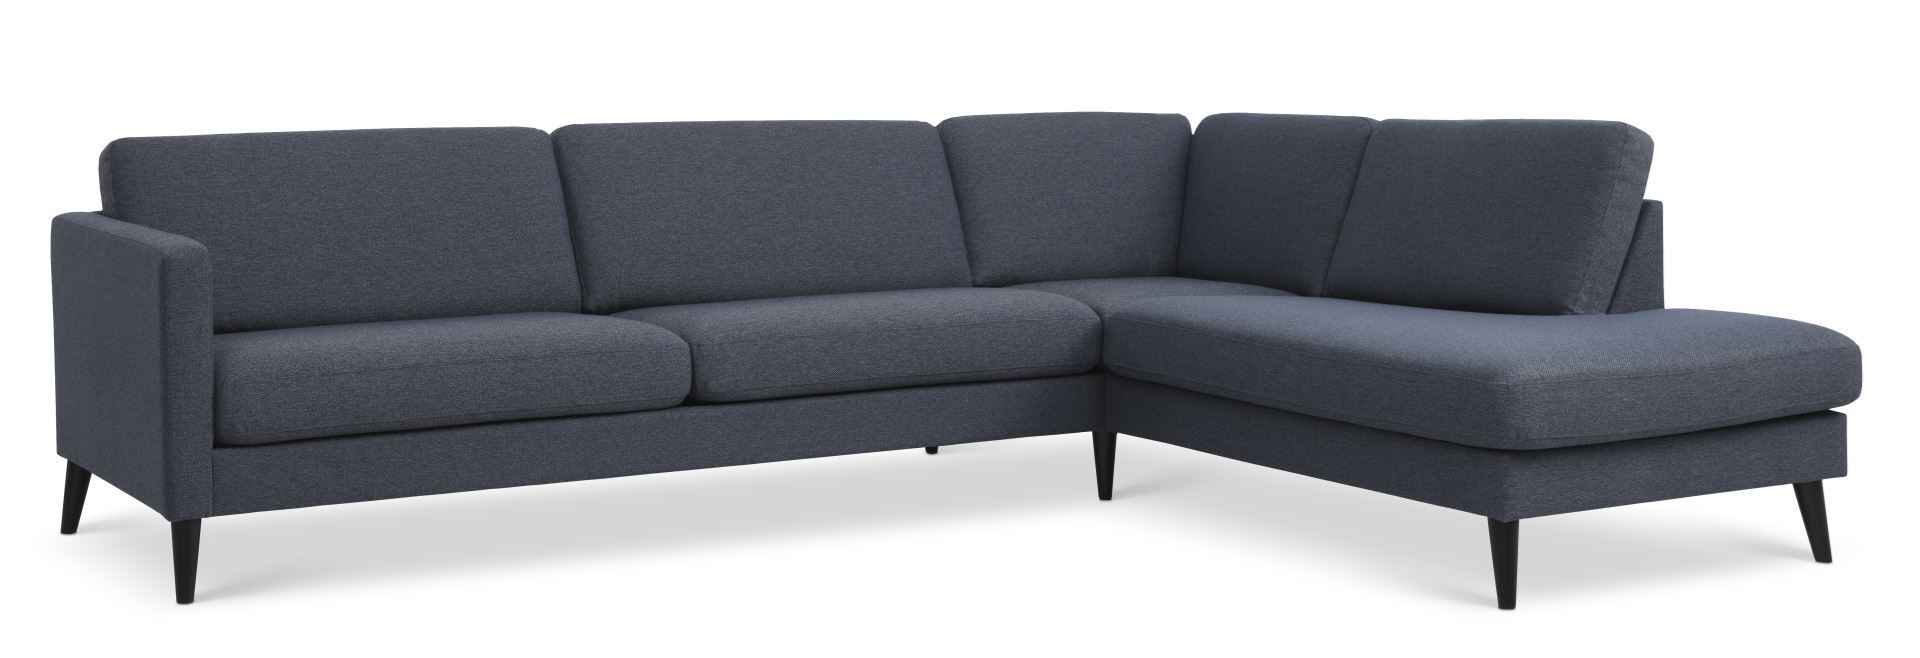 Ask sæt 61 stor OE sofa, m. højre chaiselong - navy blåt polyester stof og sort træ